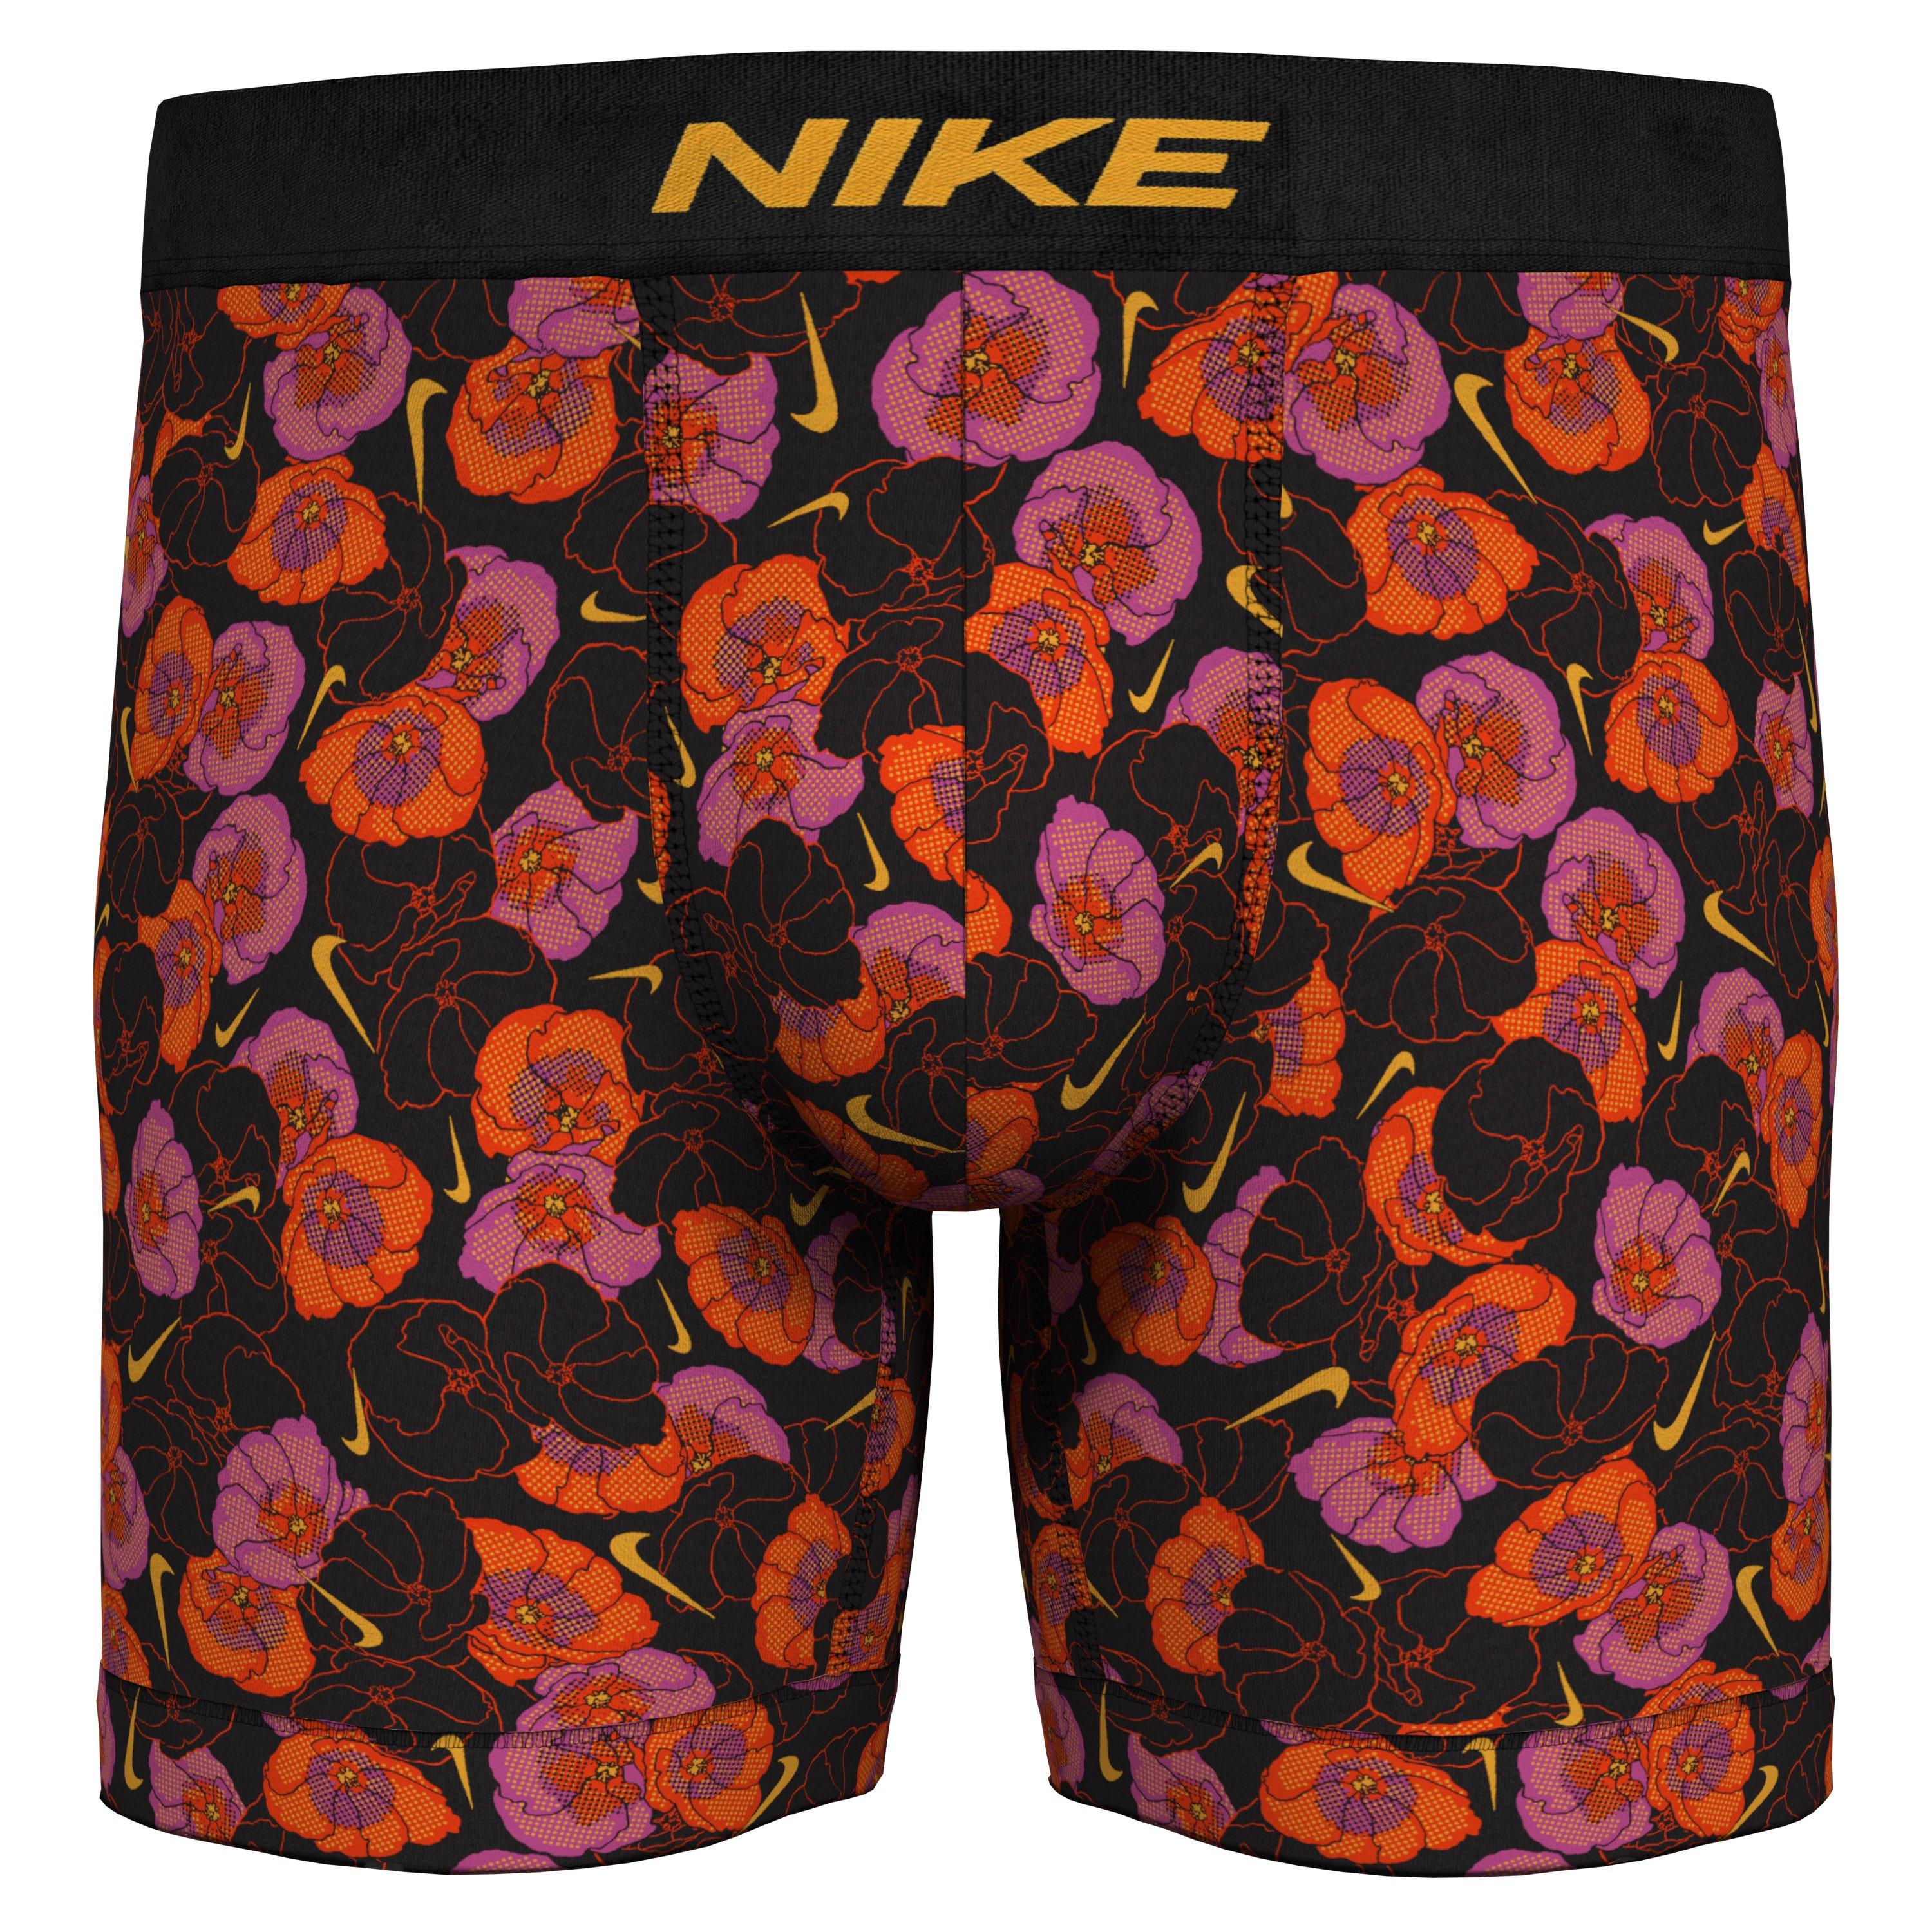 Nike Dri-FIT Essential Micro Men's Boxer Briefs.